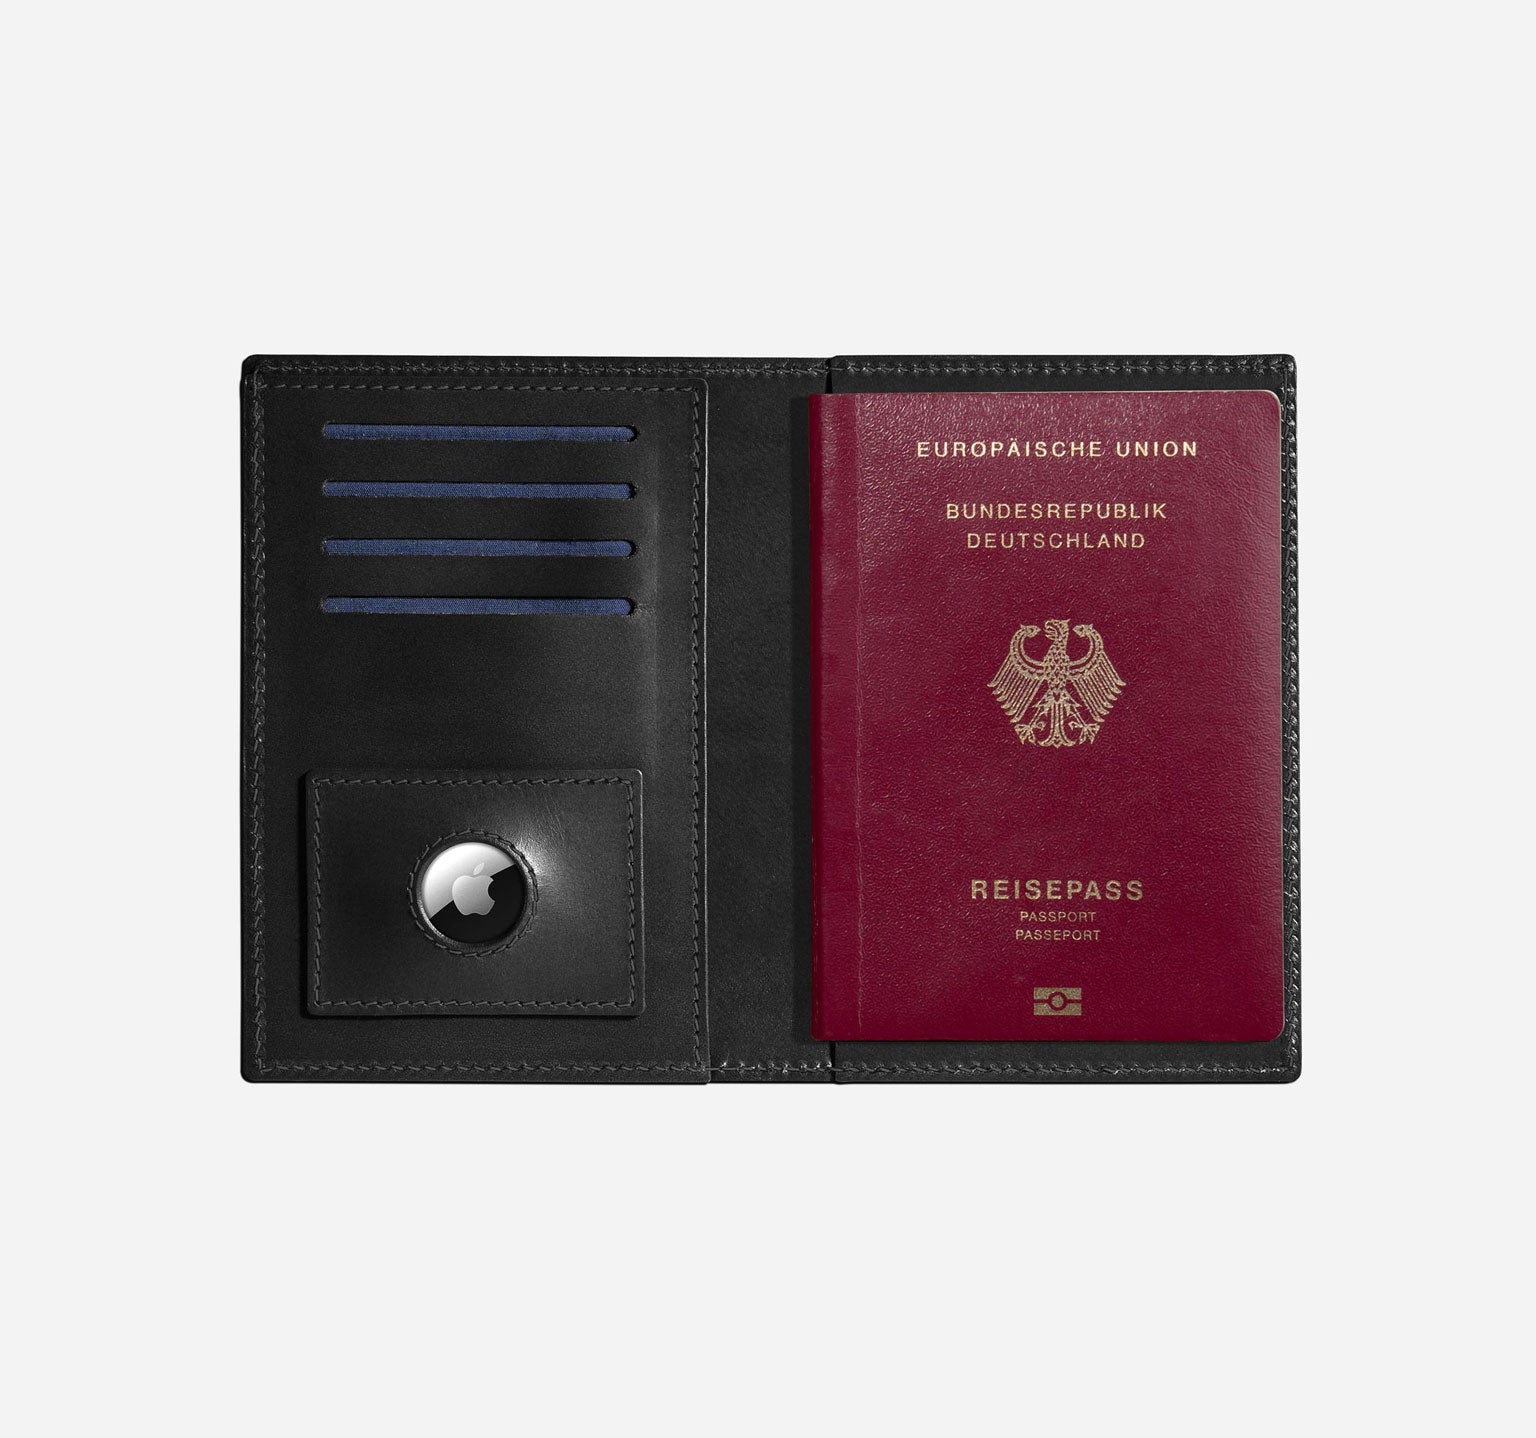 Nappa | Black Tone-on-Tone | Passport Cover